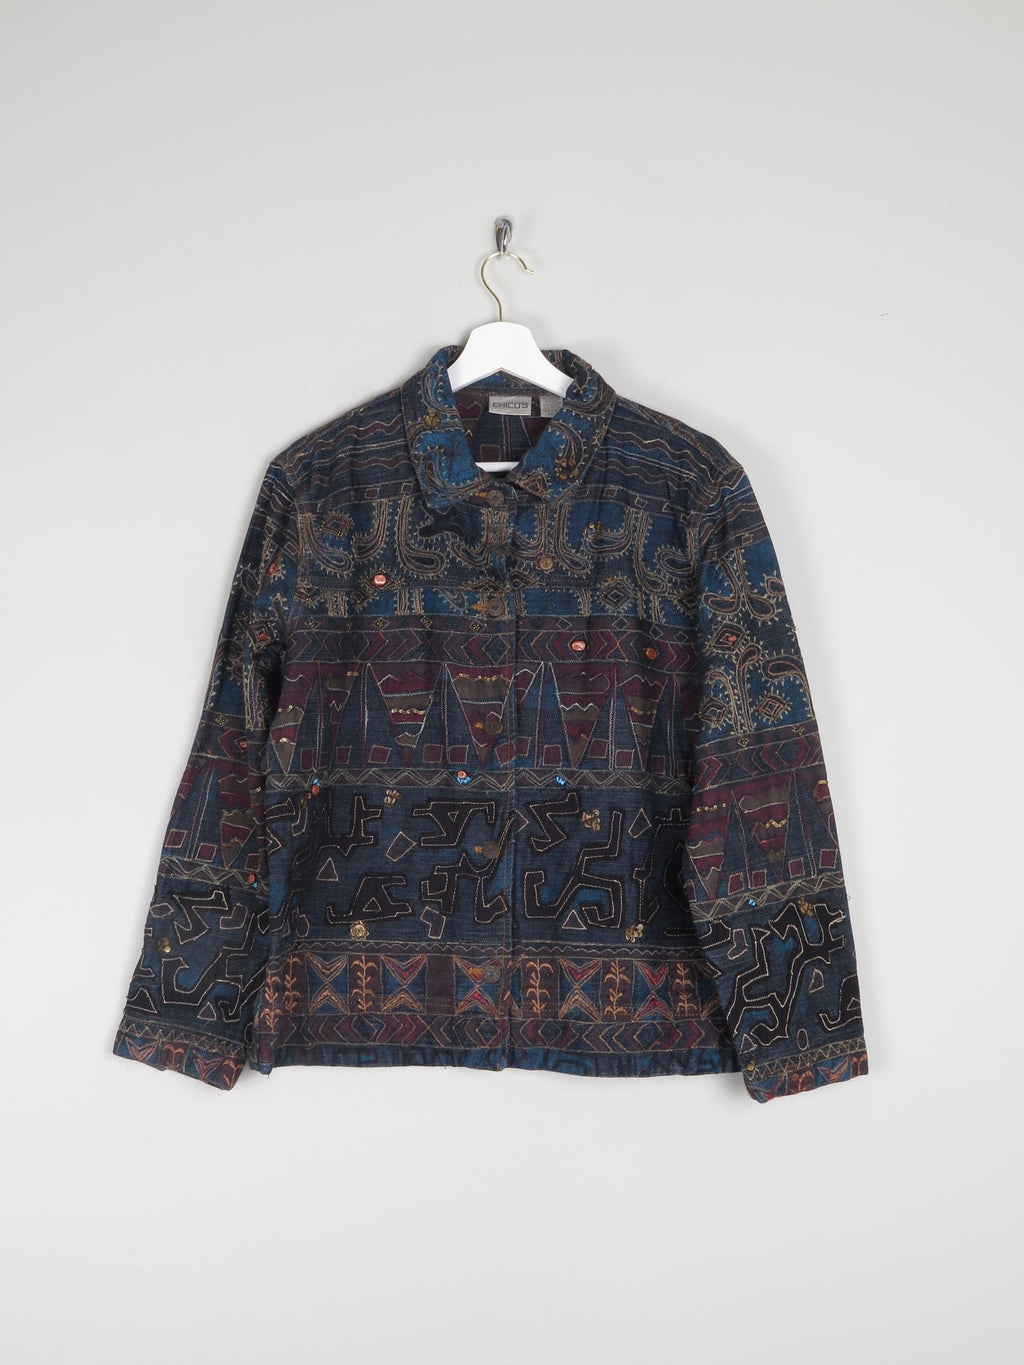 Women's Vintage Embroidered & Embellished Denim Jacket M - The Harlequin